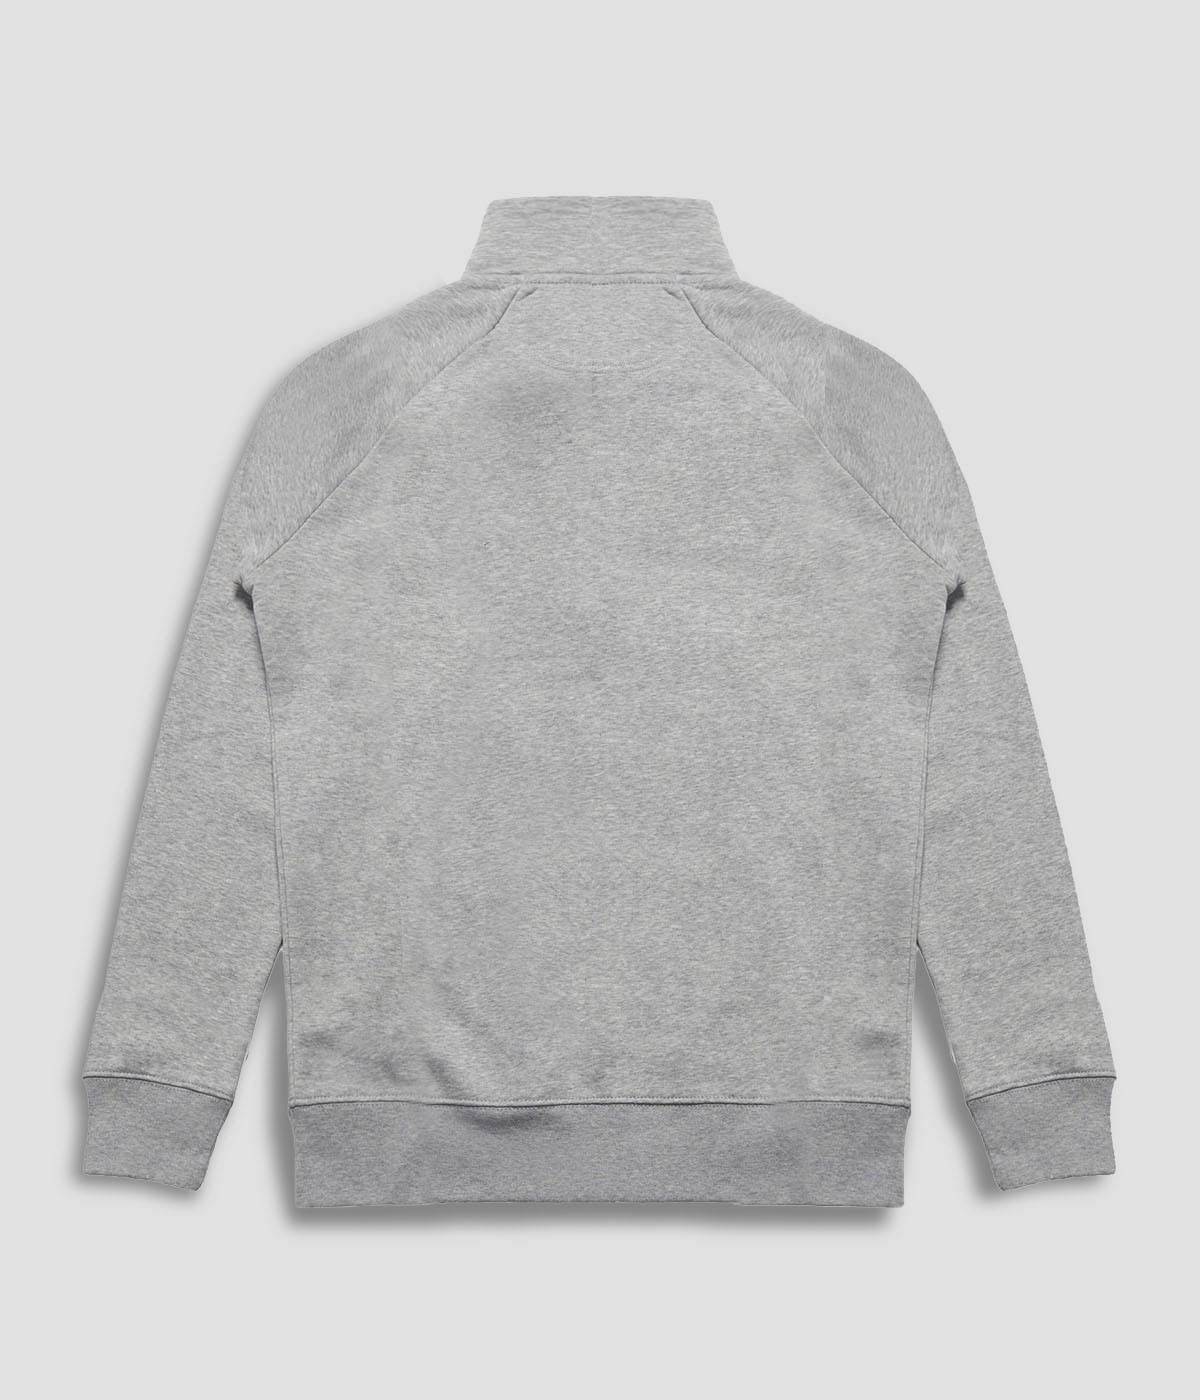 Cotton full-zip sweatshirt